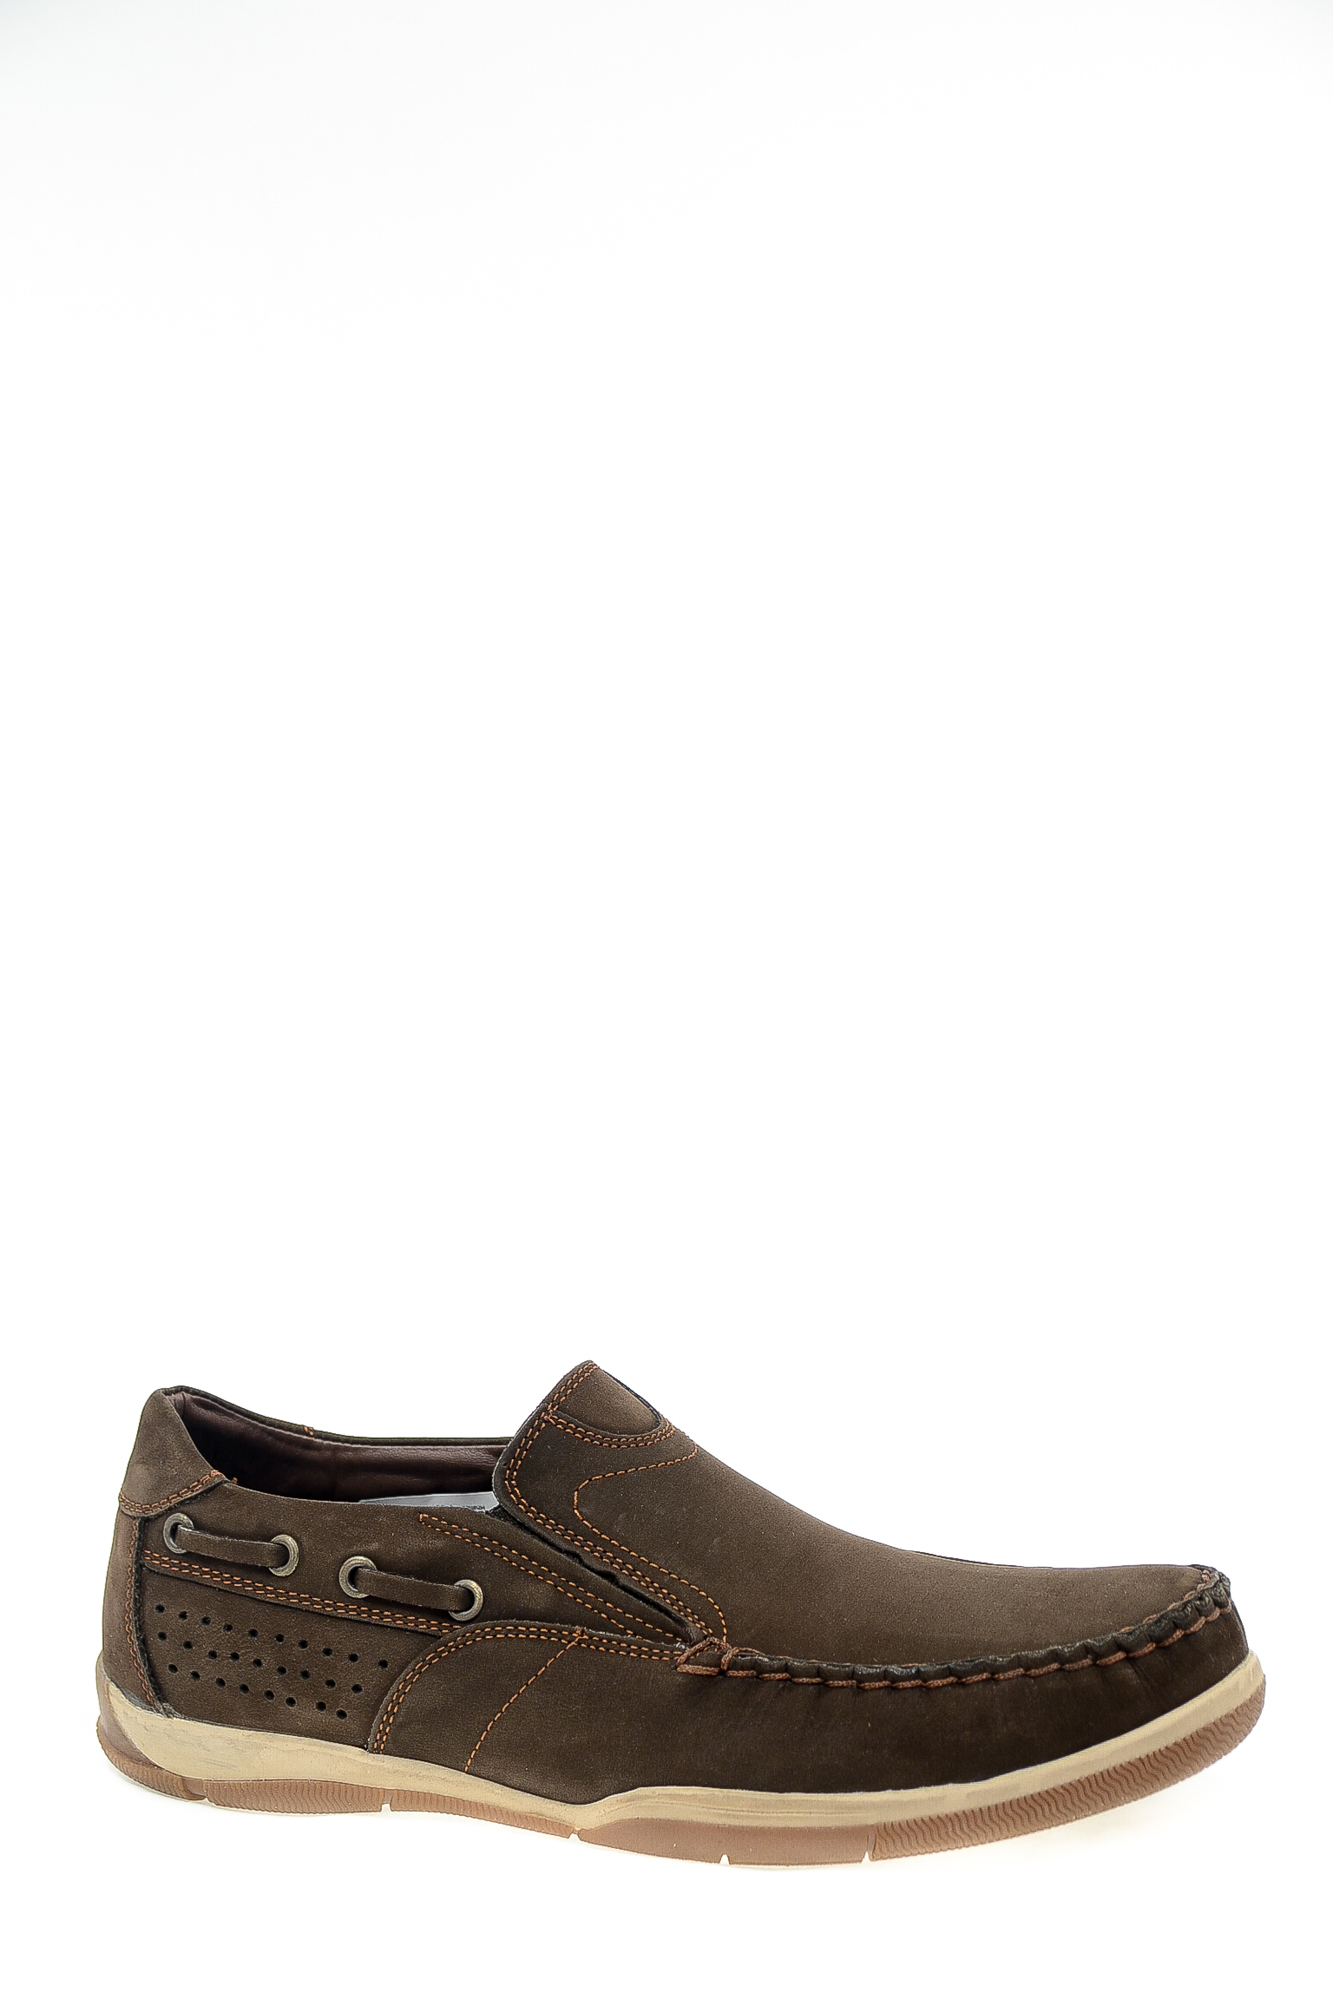 Туфли натуральная кожа Egardi Egardi 405-11153-1 кор цвет коричневый.